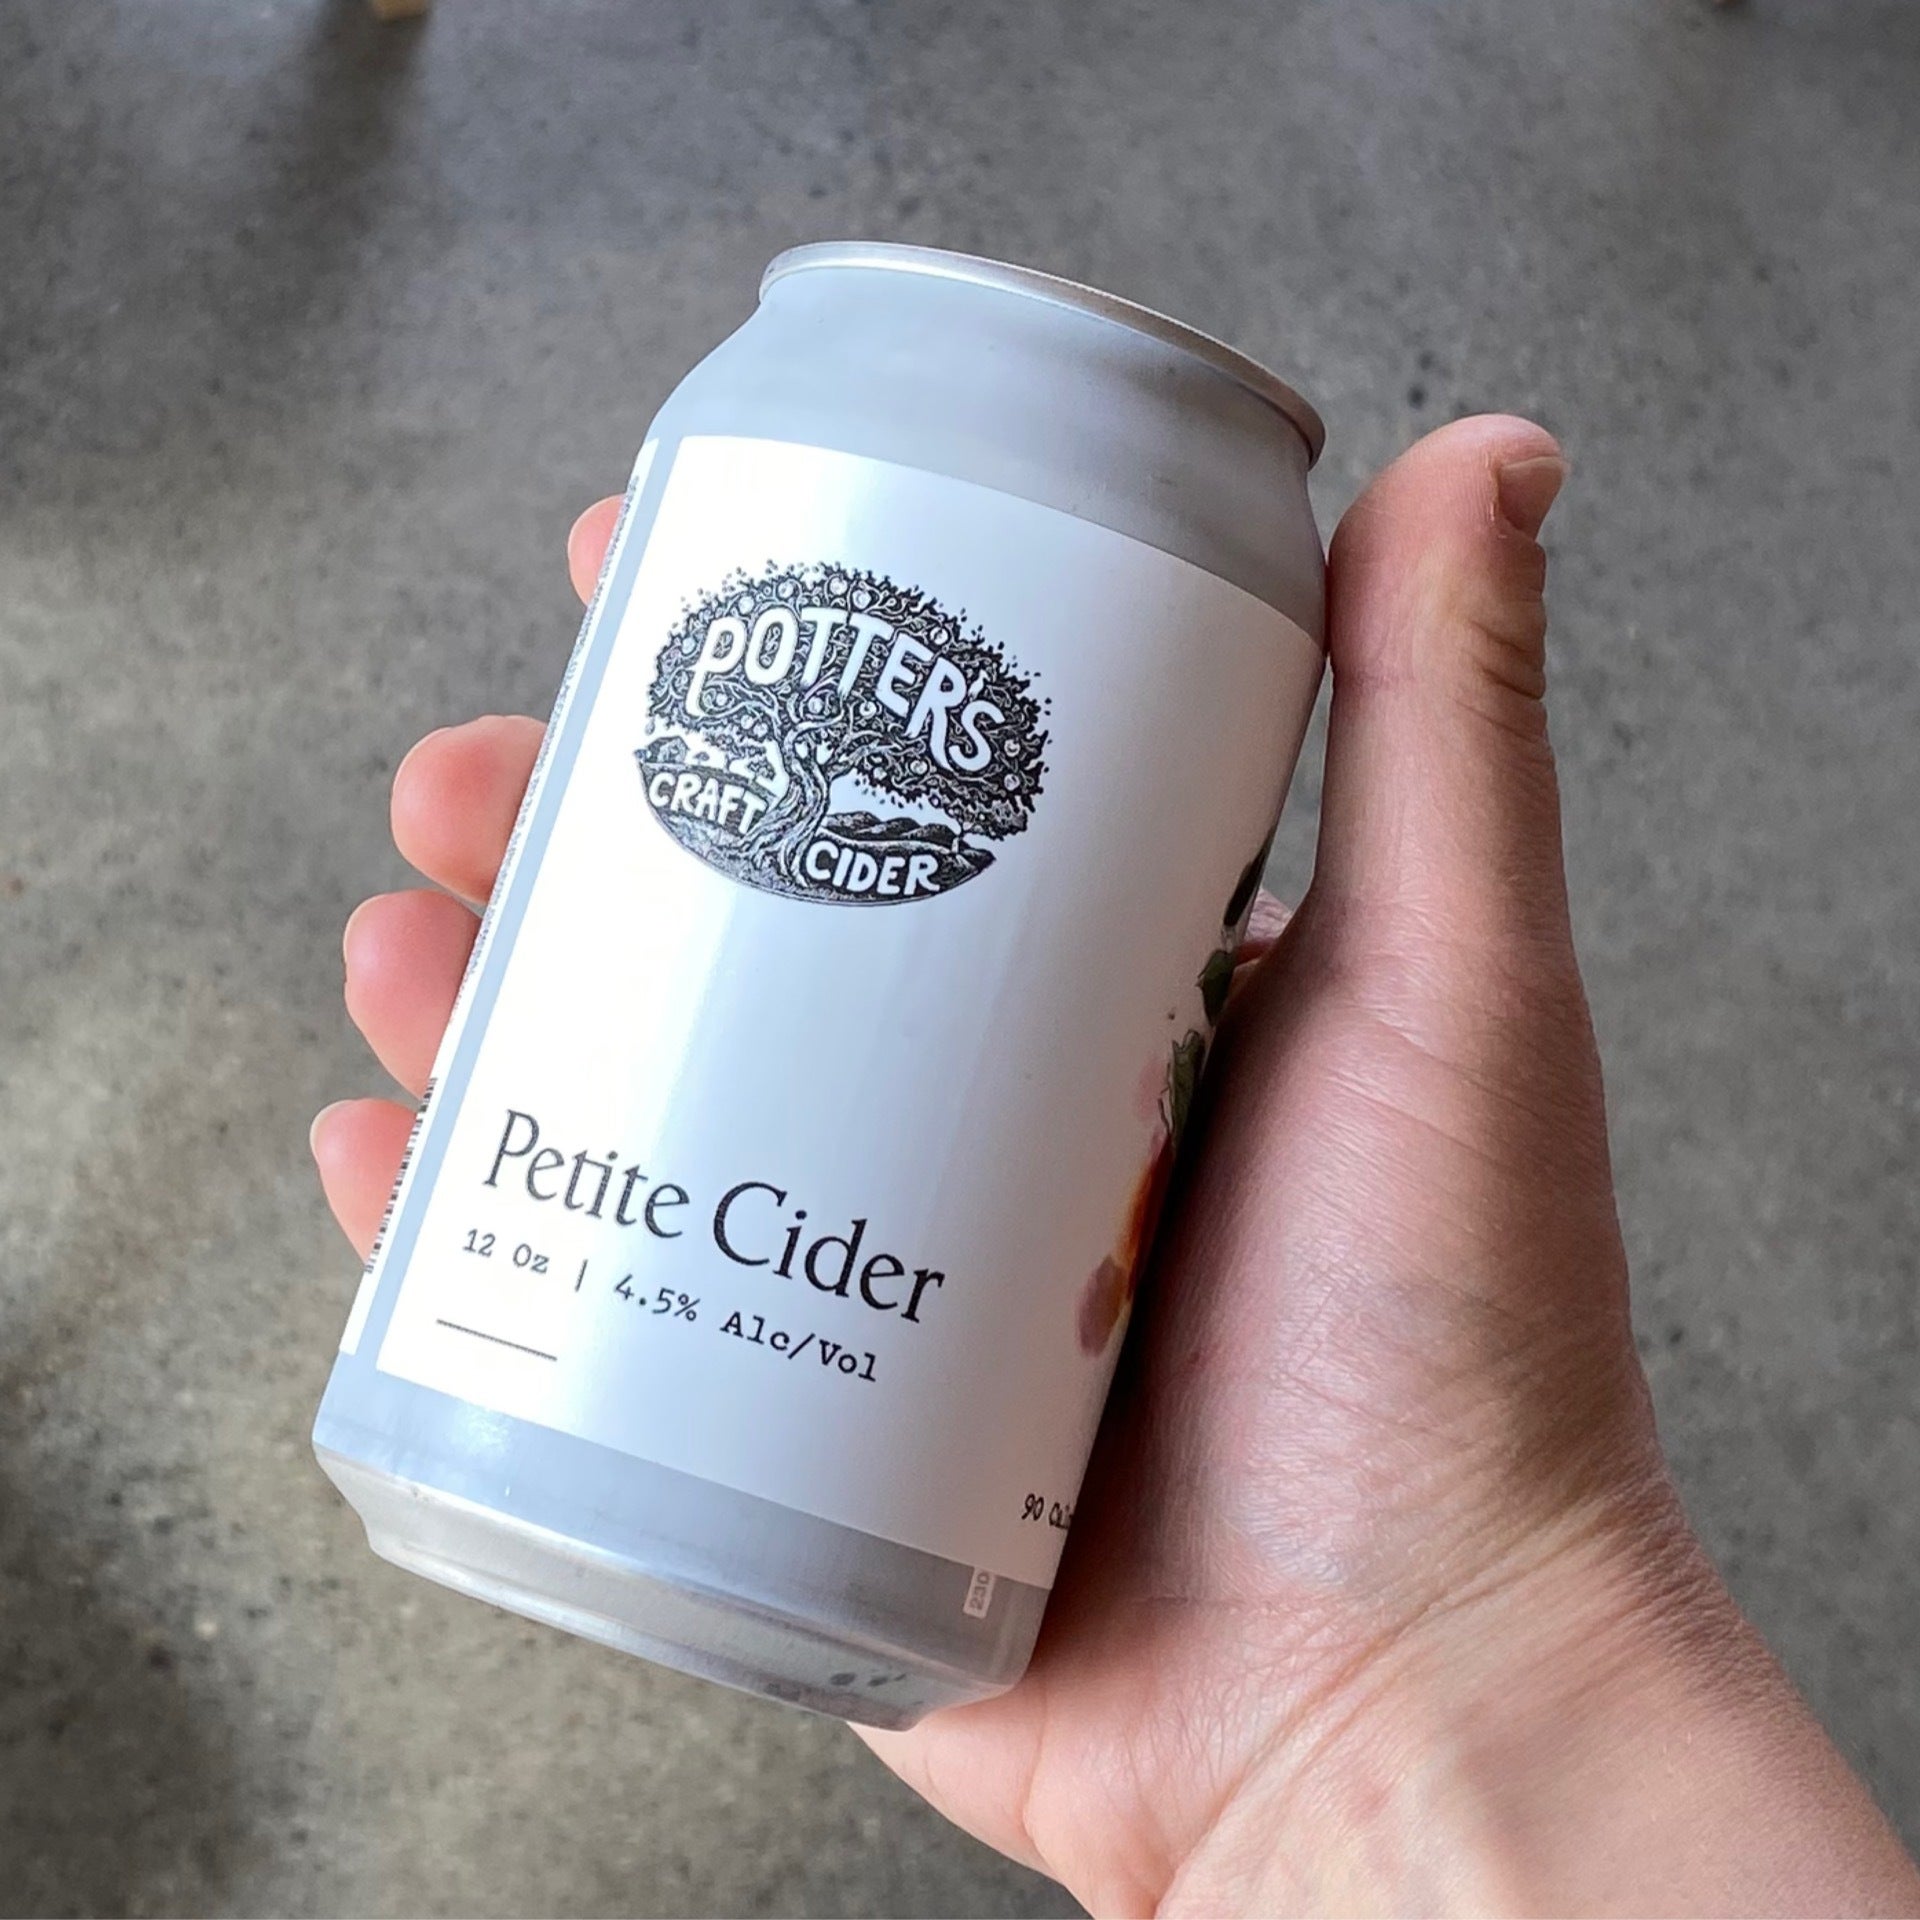 Potter's Craft Cider, Cider